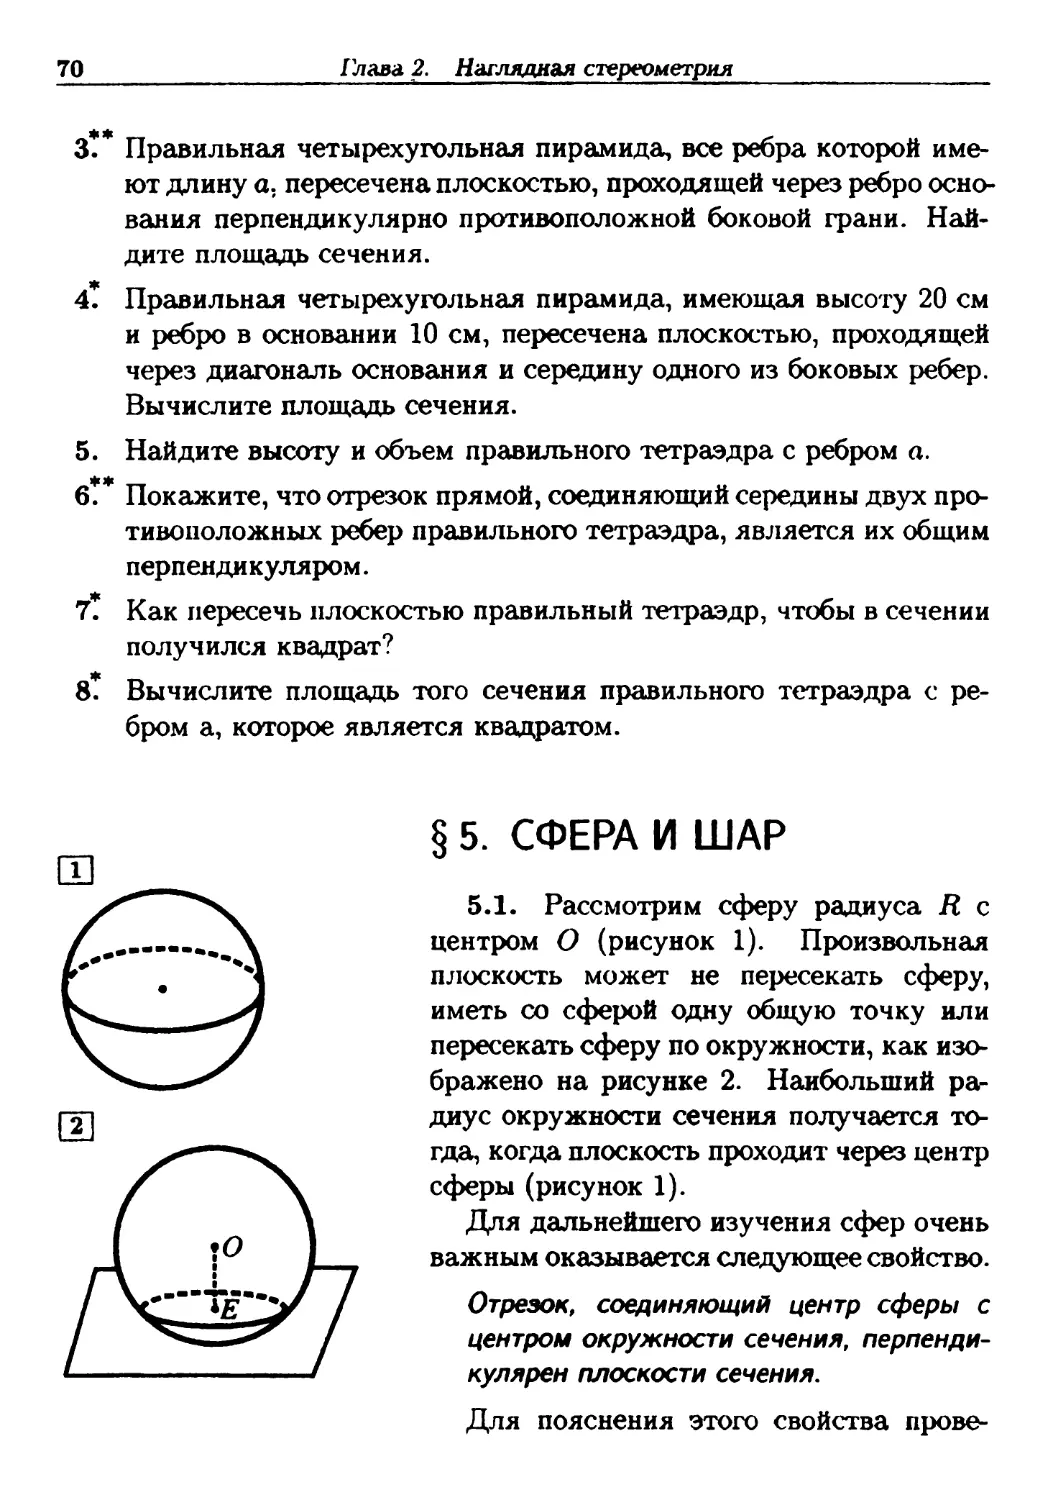 §5. Сфера и шар